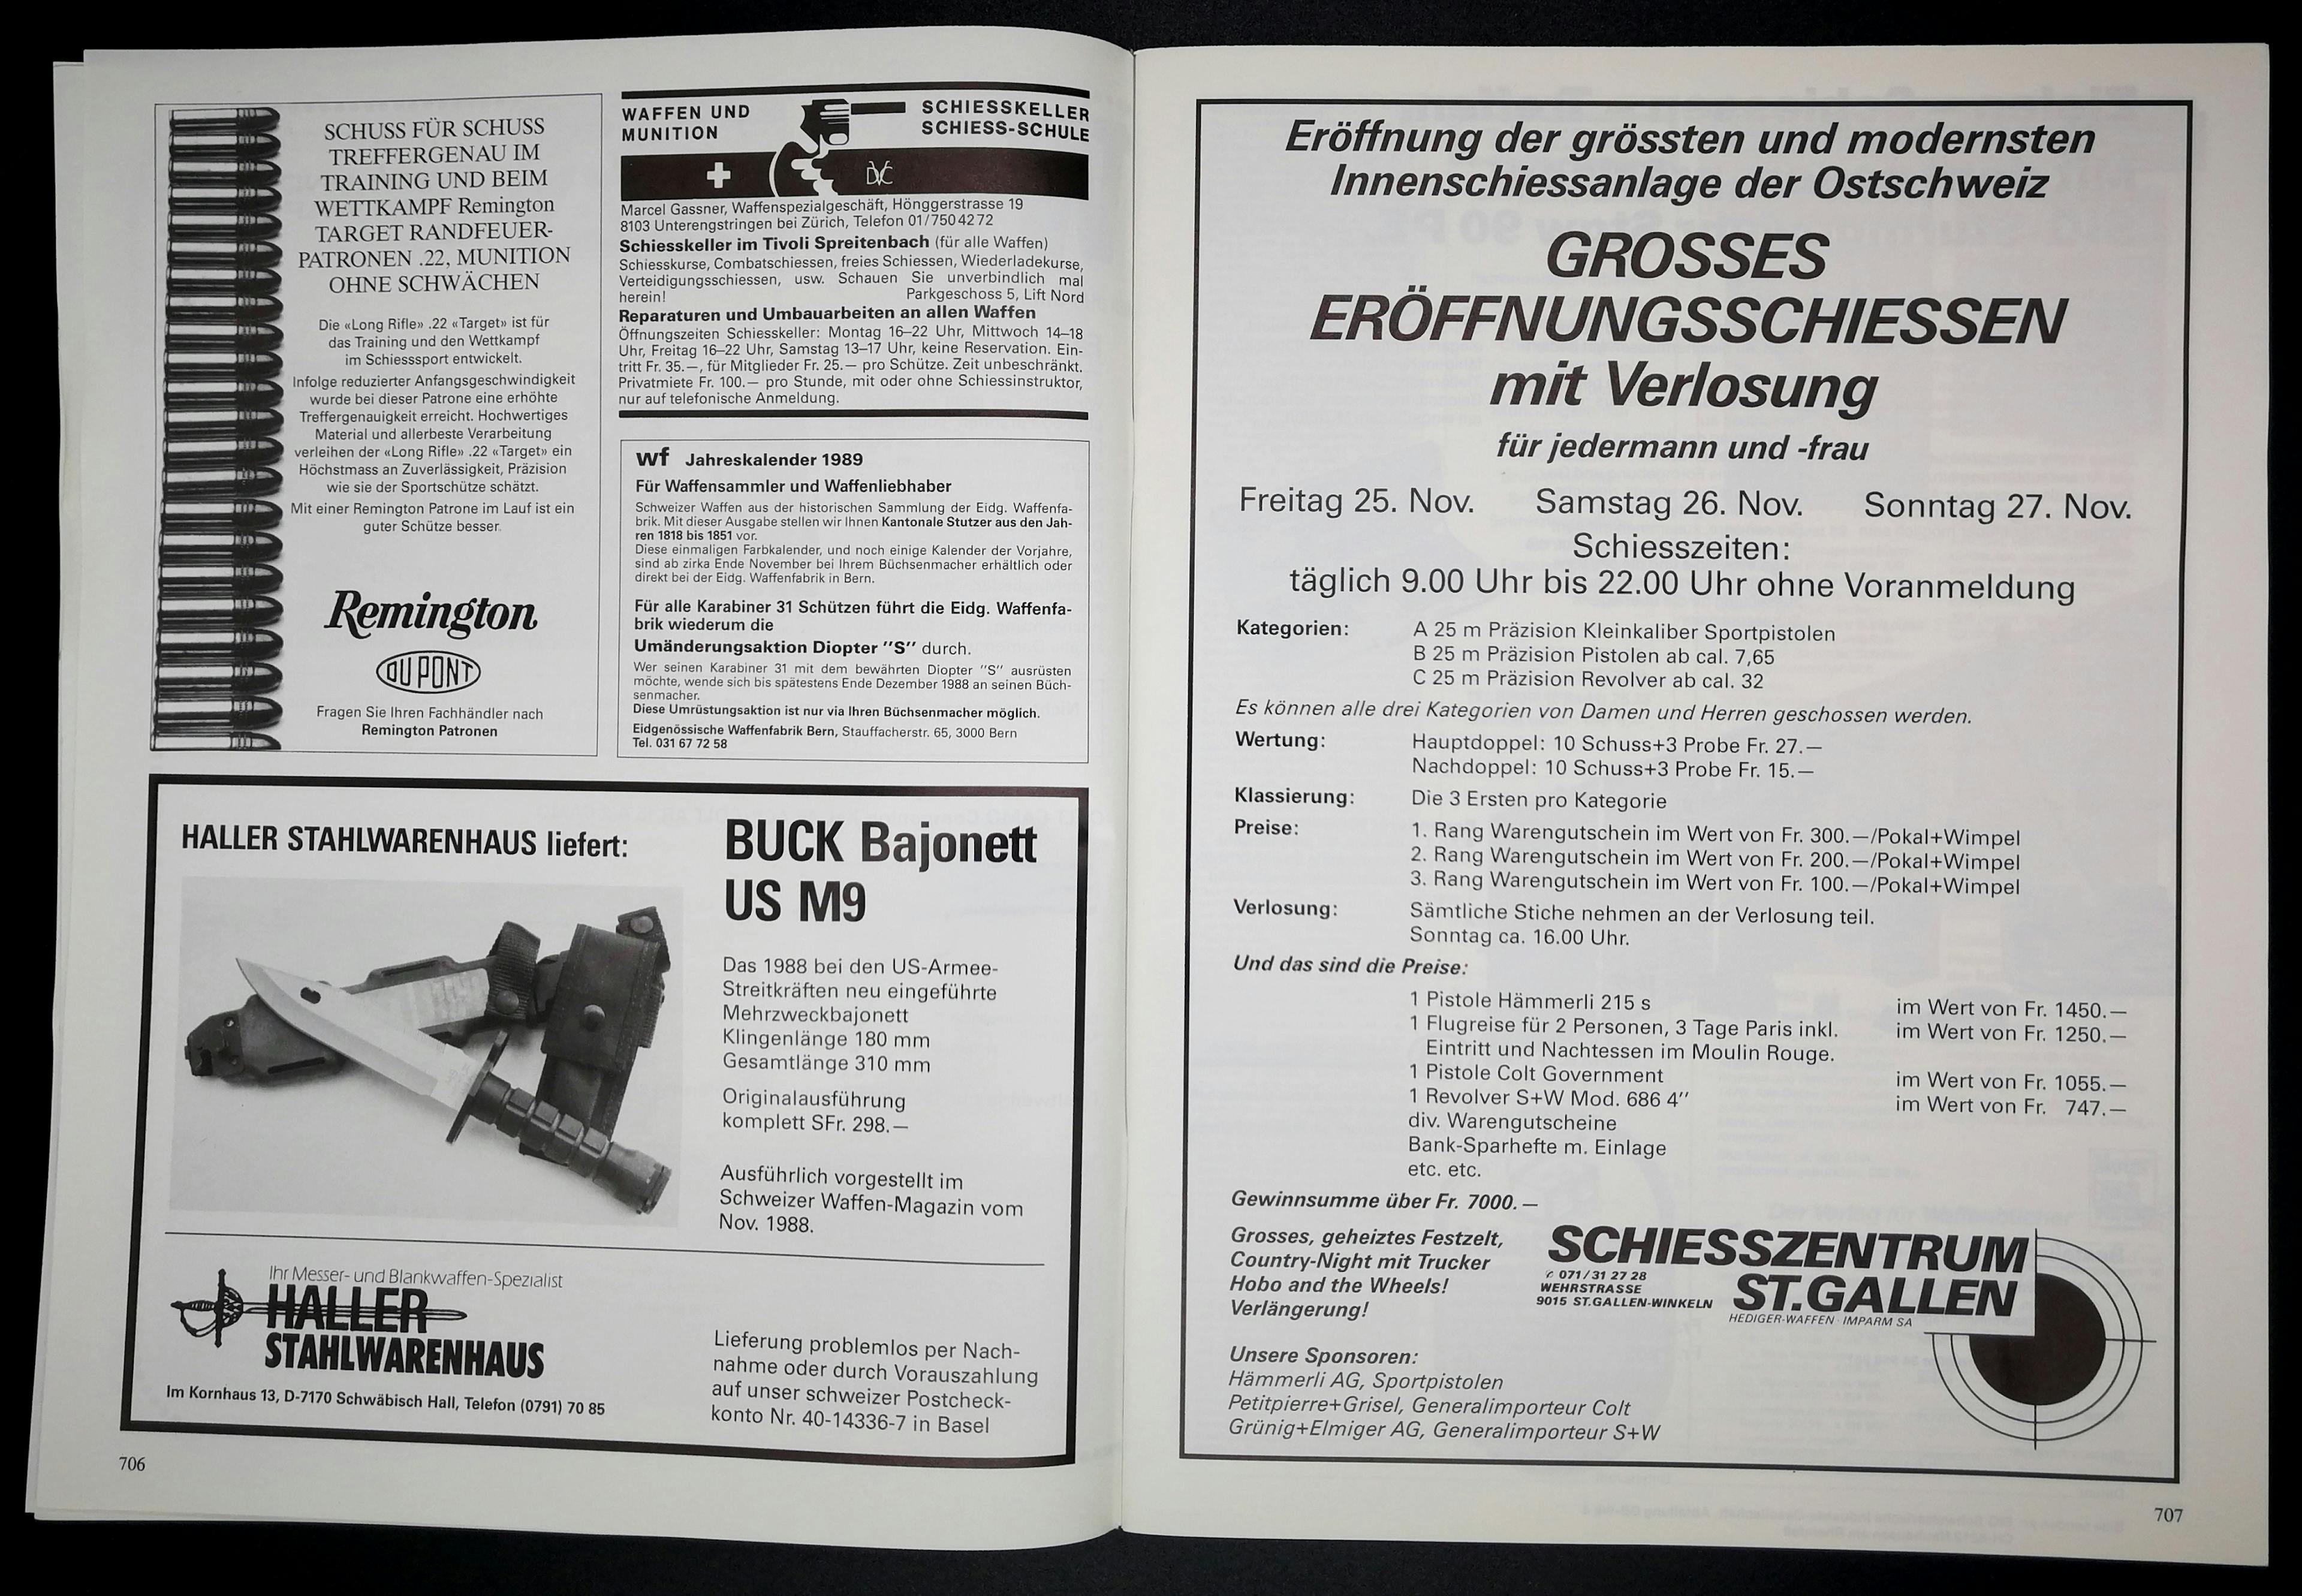 Die Waffenfabrik Bern umwirbt ihren Kalender 1989 und das Schiesszentrum St. Gallen eröffnet! ...wer wohl den Eintritt in die Moulin Rouge gewonnen hat?
